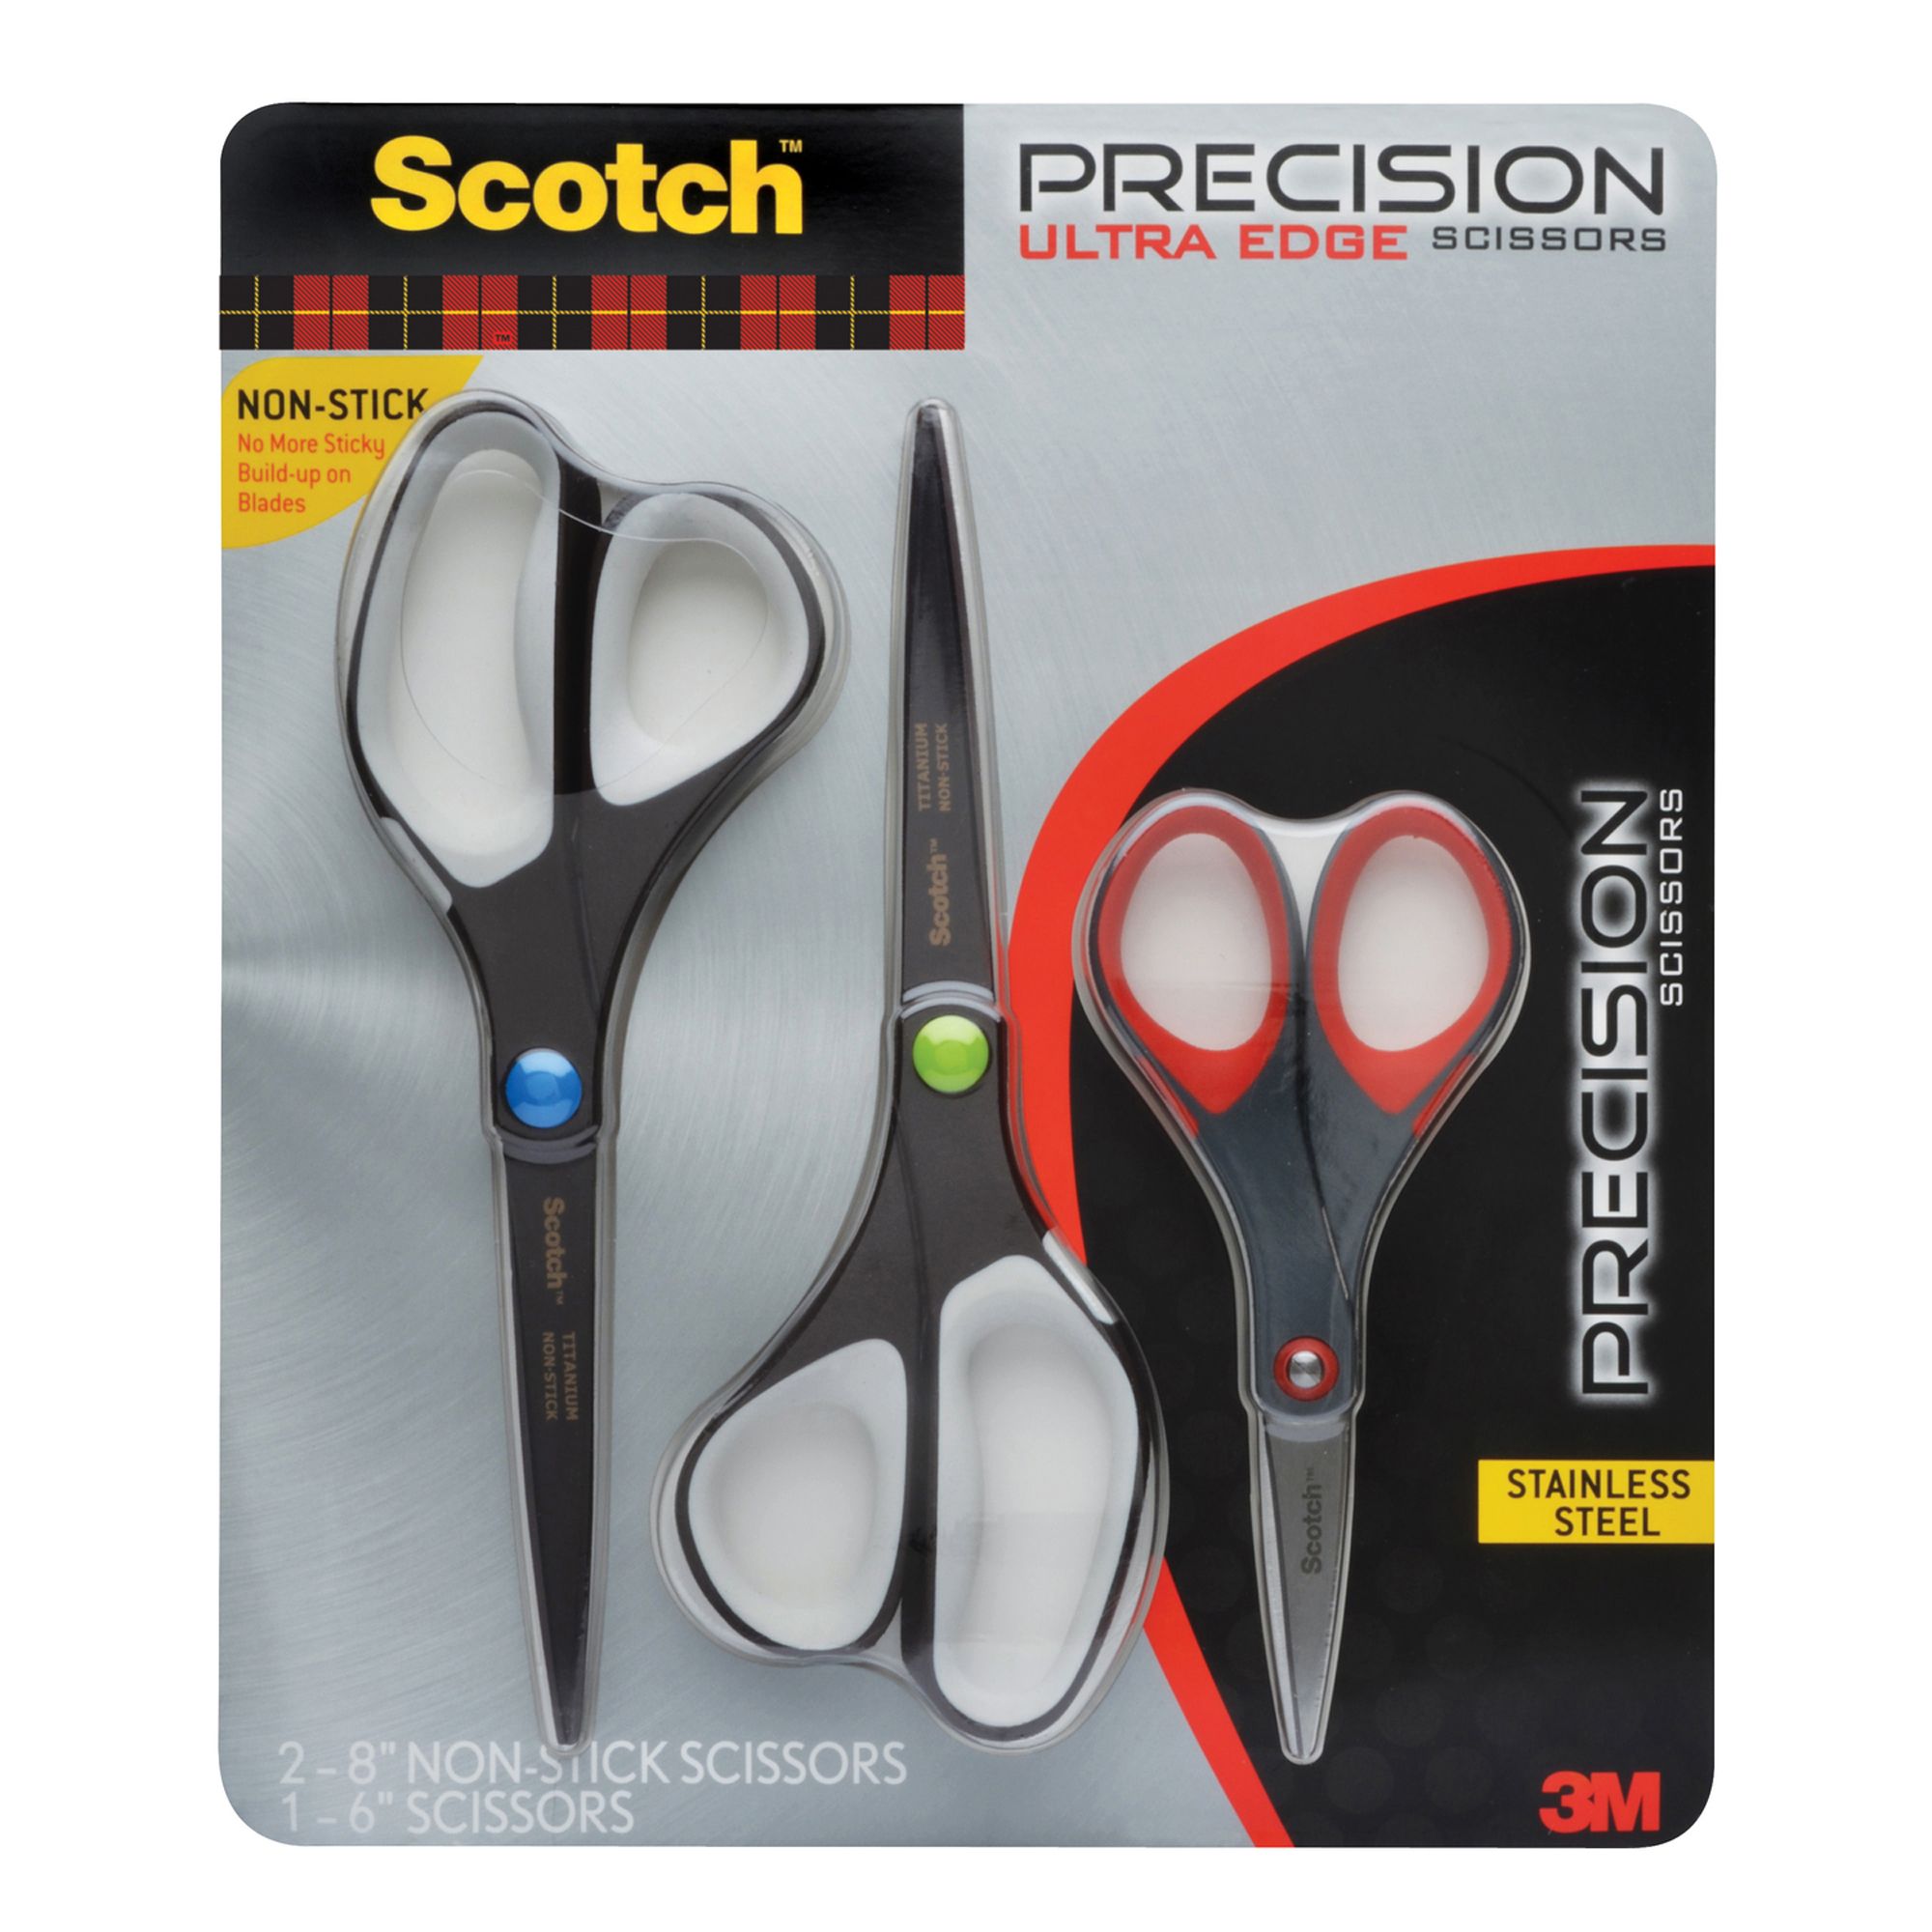 Scotch Non-Stick Precision Ultra Edge Scissors and Precision Scissors,  Multipack